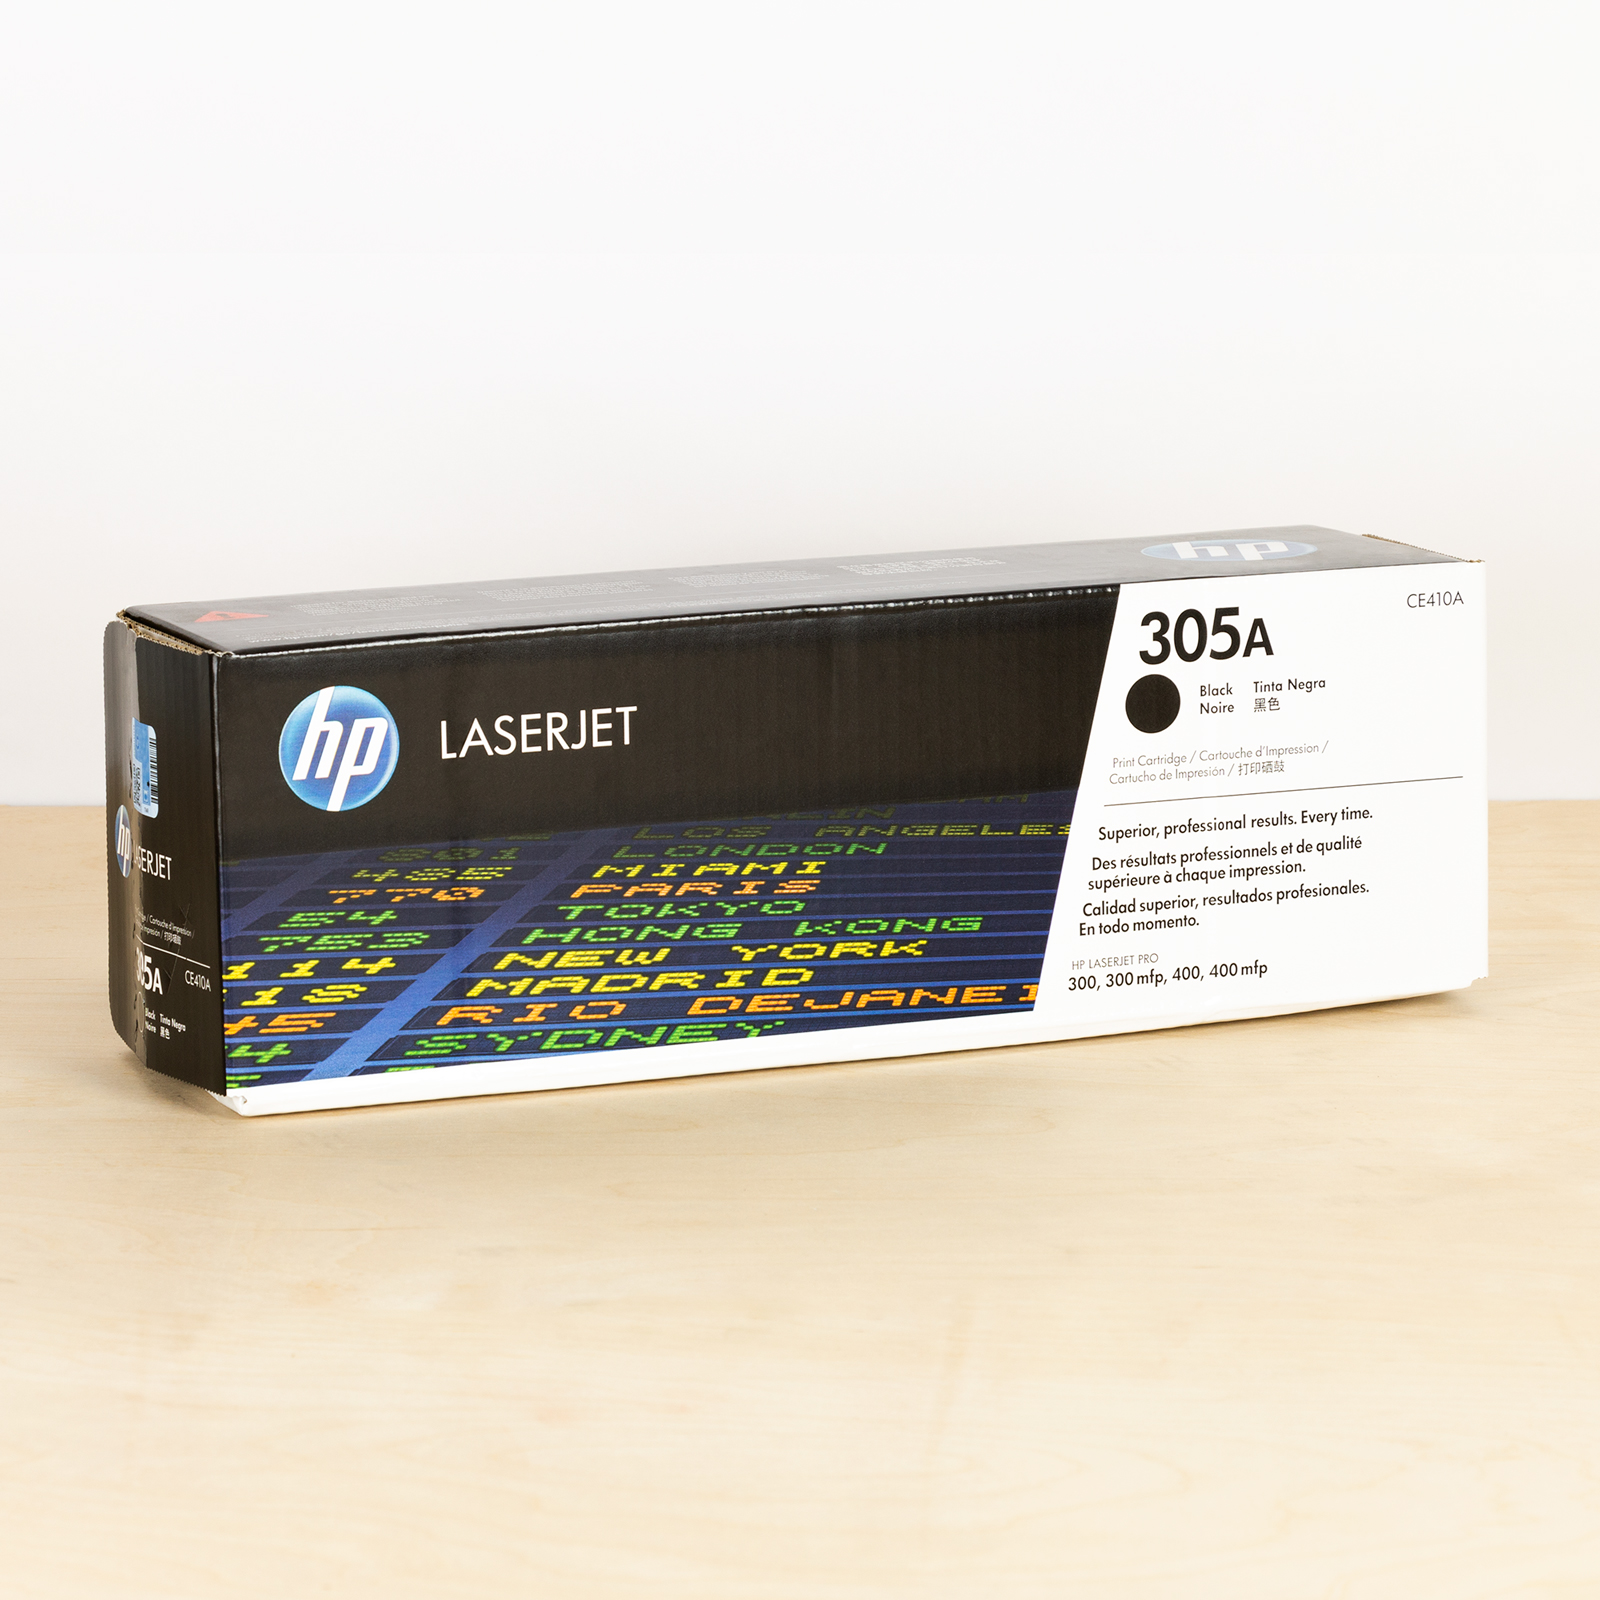 Hp Black-Toner-Cartridge-HP-LaserJet-Pro-400-Color-M4